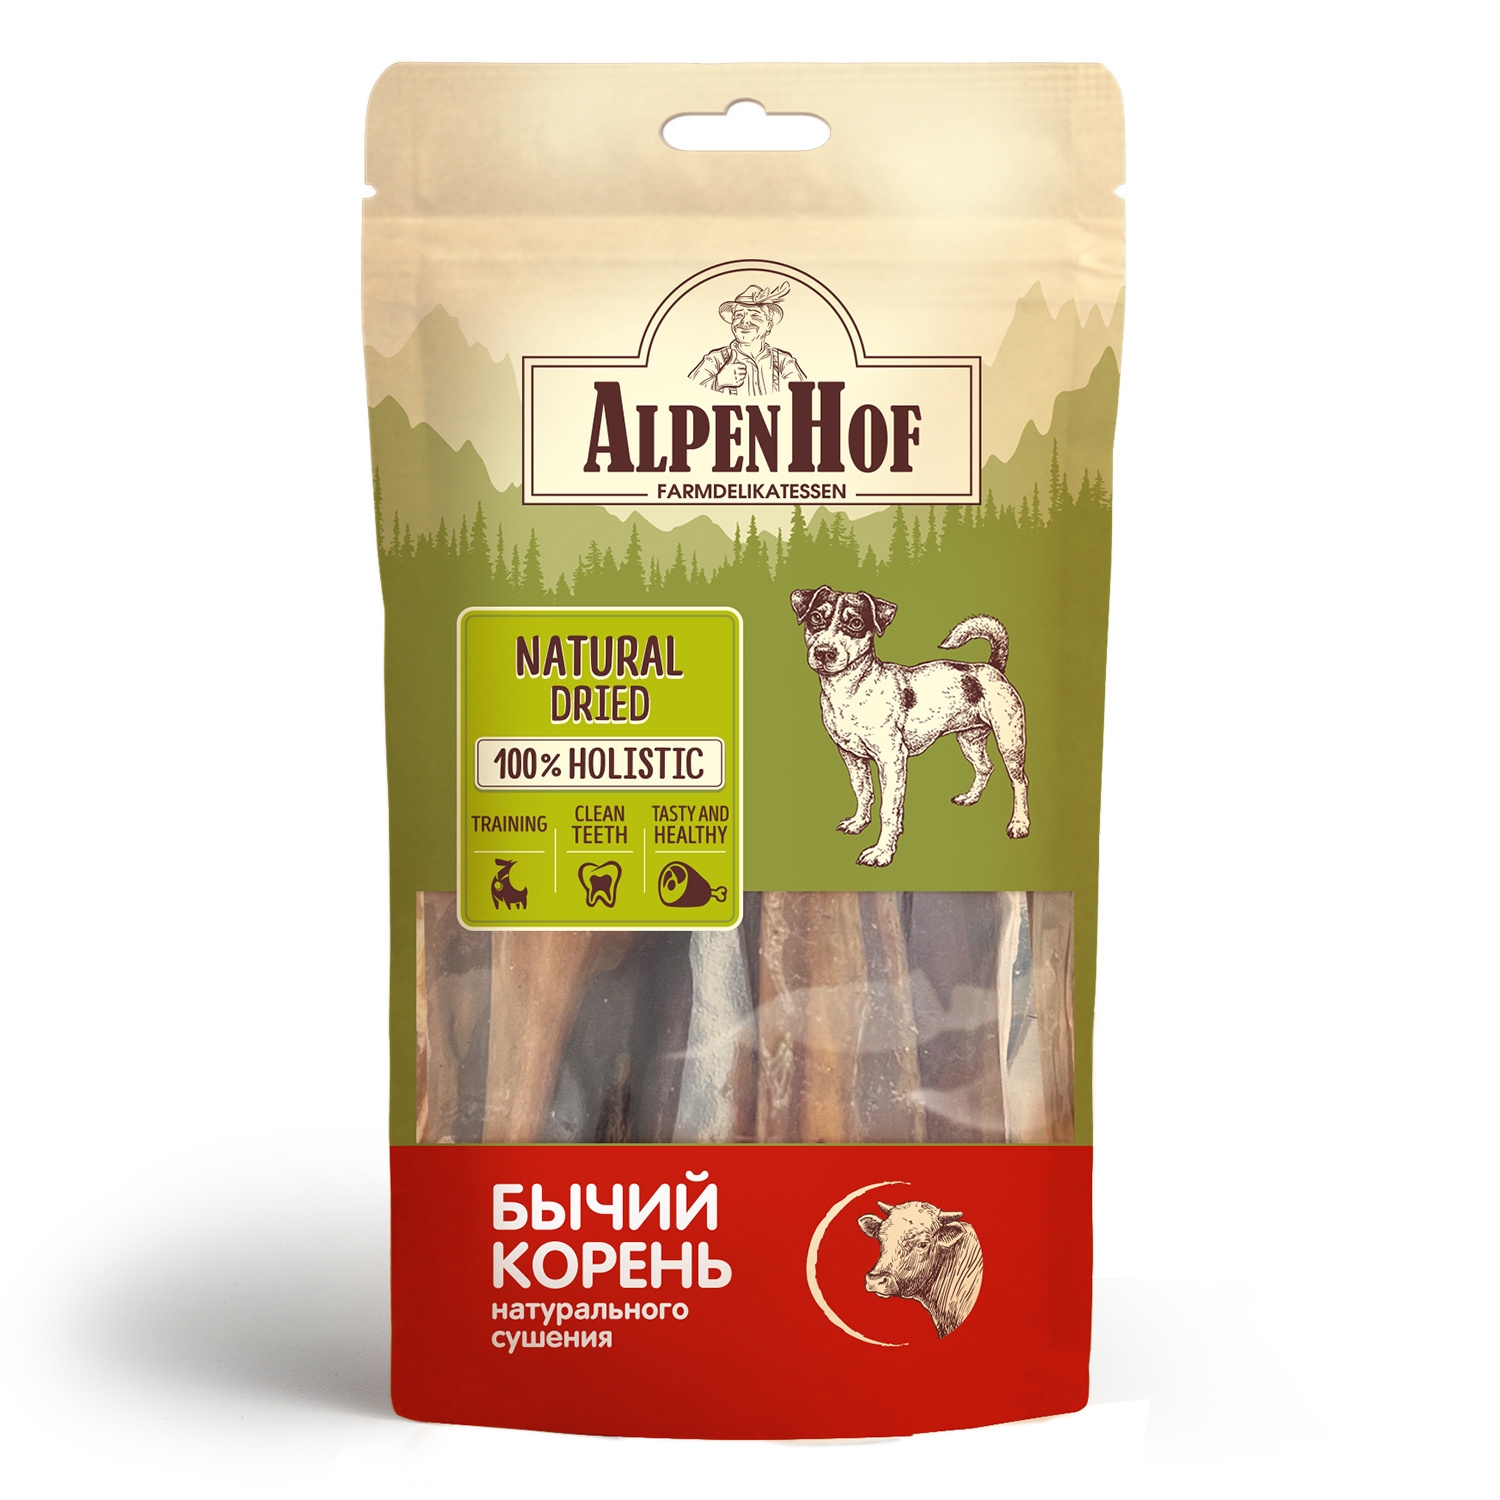 AlpenHof AlpenHof лакомство Бычий корень для собак (64 г) organic сhoice лакомство для собак корень бычий 65 г